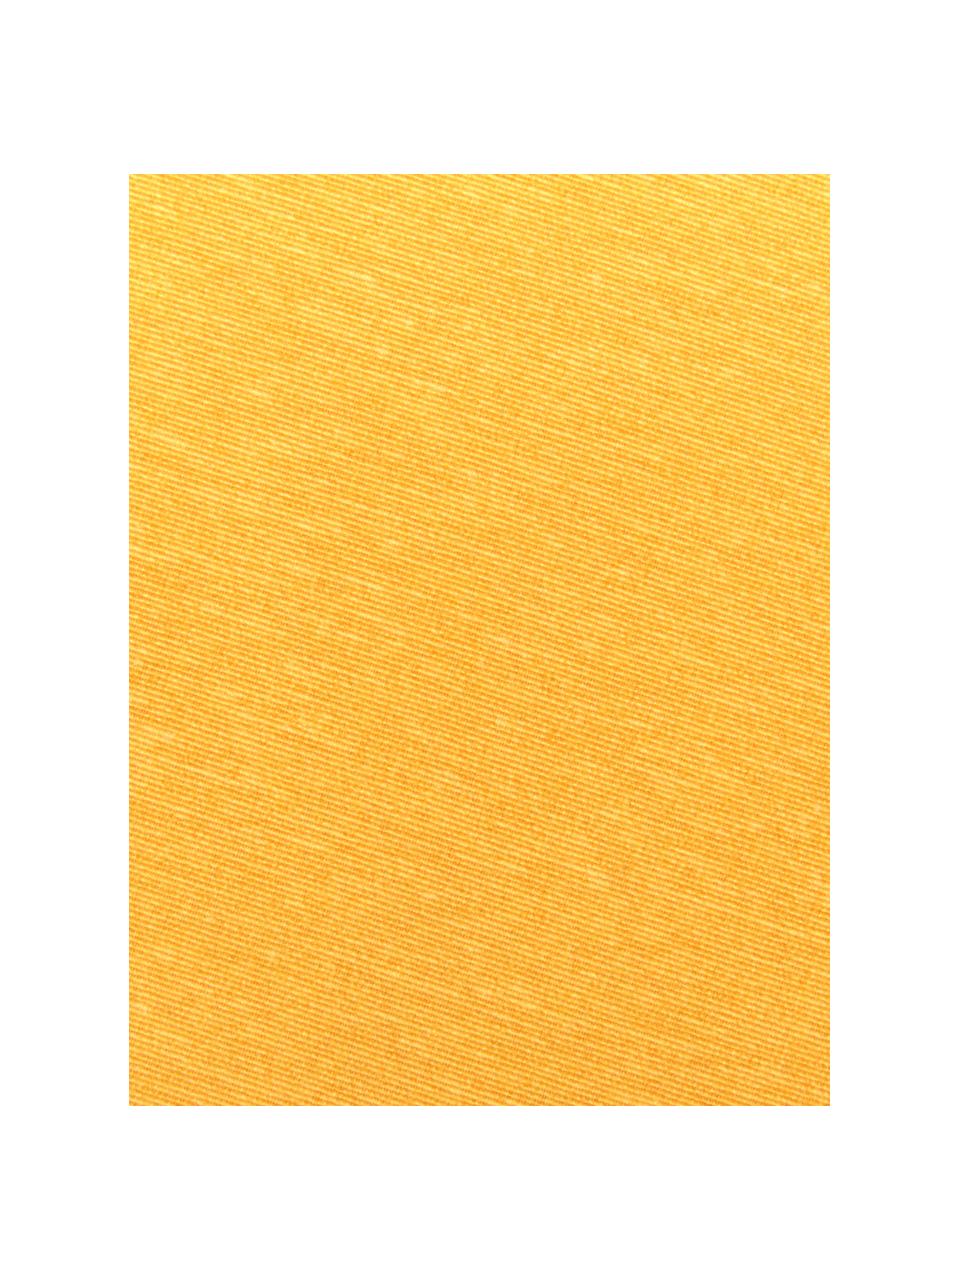 Effen bankkussen Panama in geel, 50% katoen, 45% polyester,
5% andere vezels, Geel, 48 x 120 cm